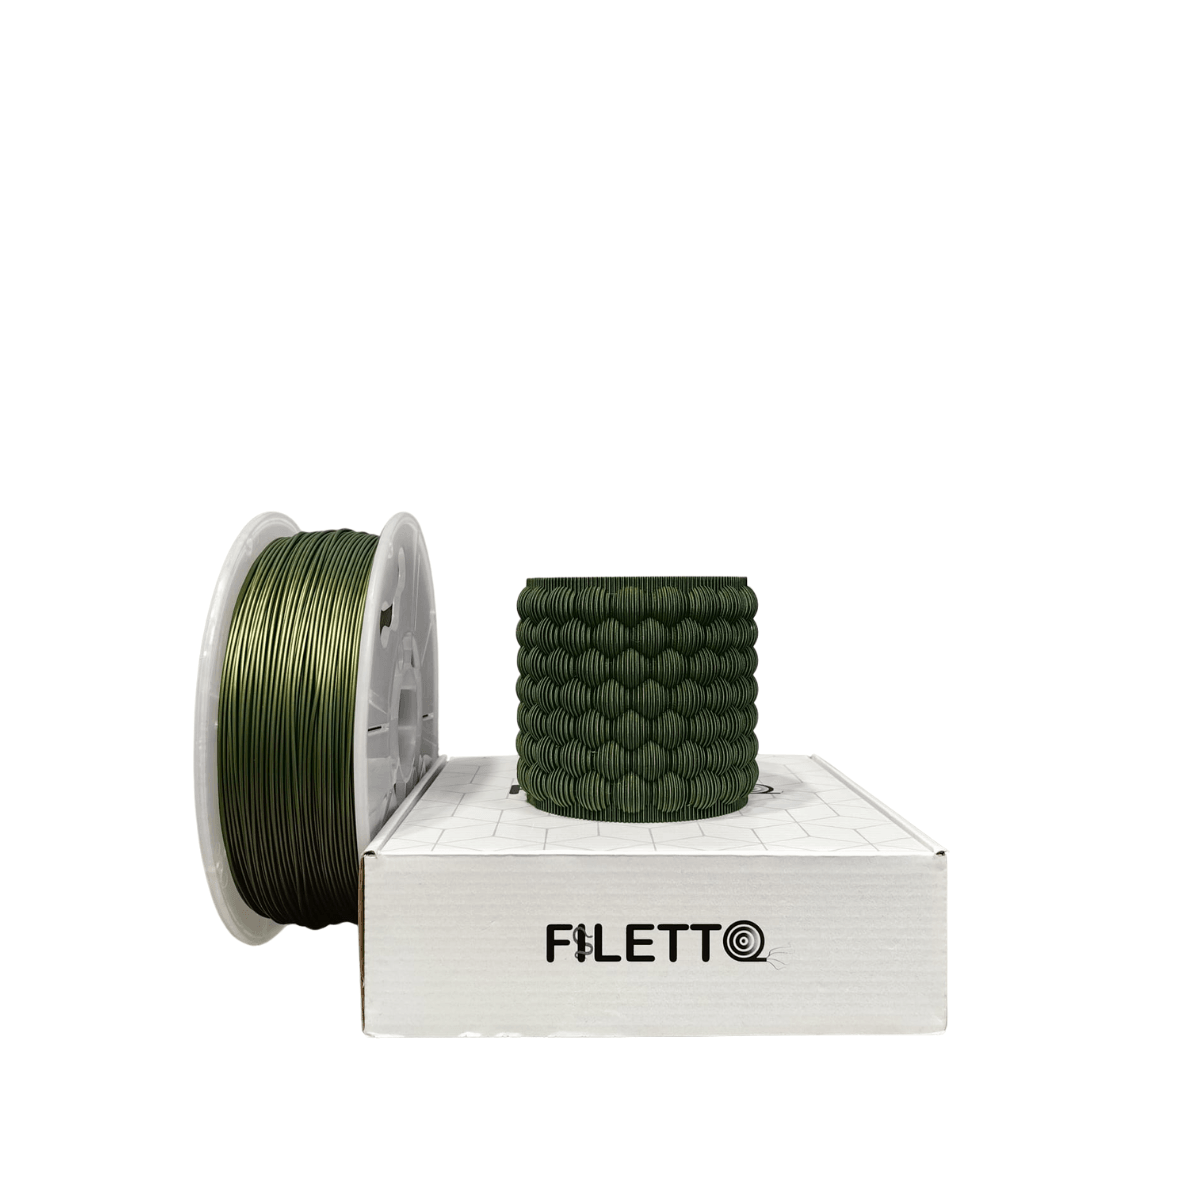 Filetto Pla+ Filament 1.75mm 1 KG - Haki Yeşili